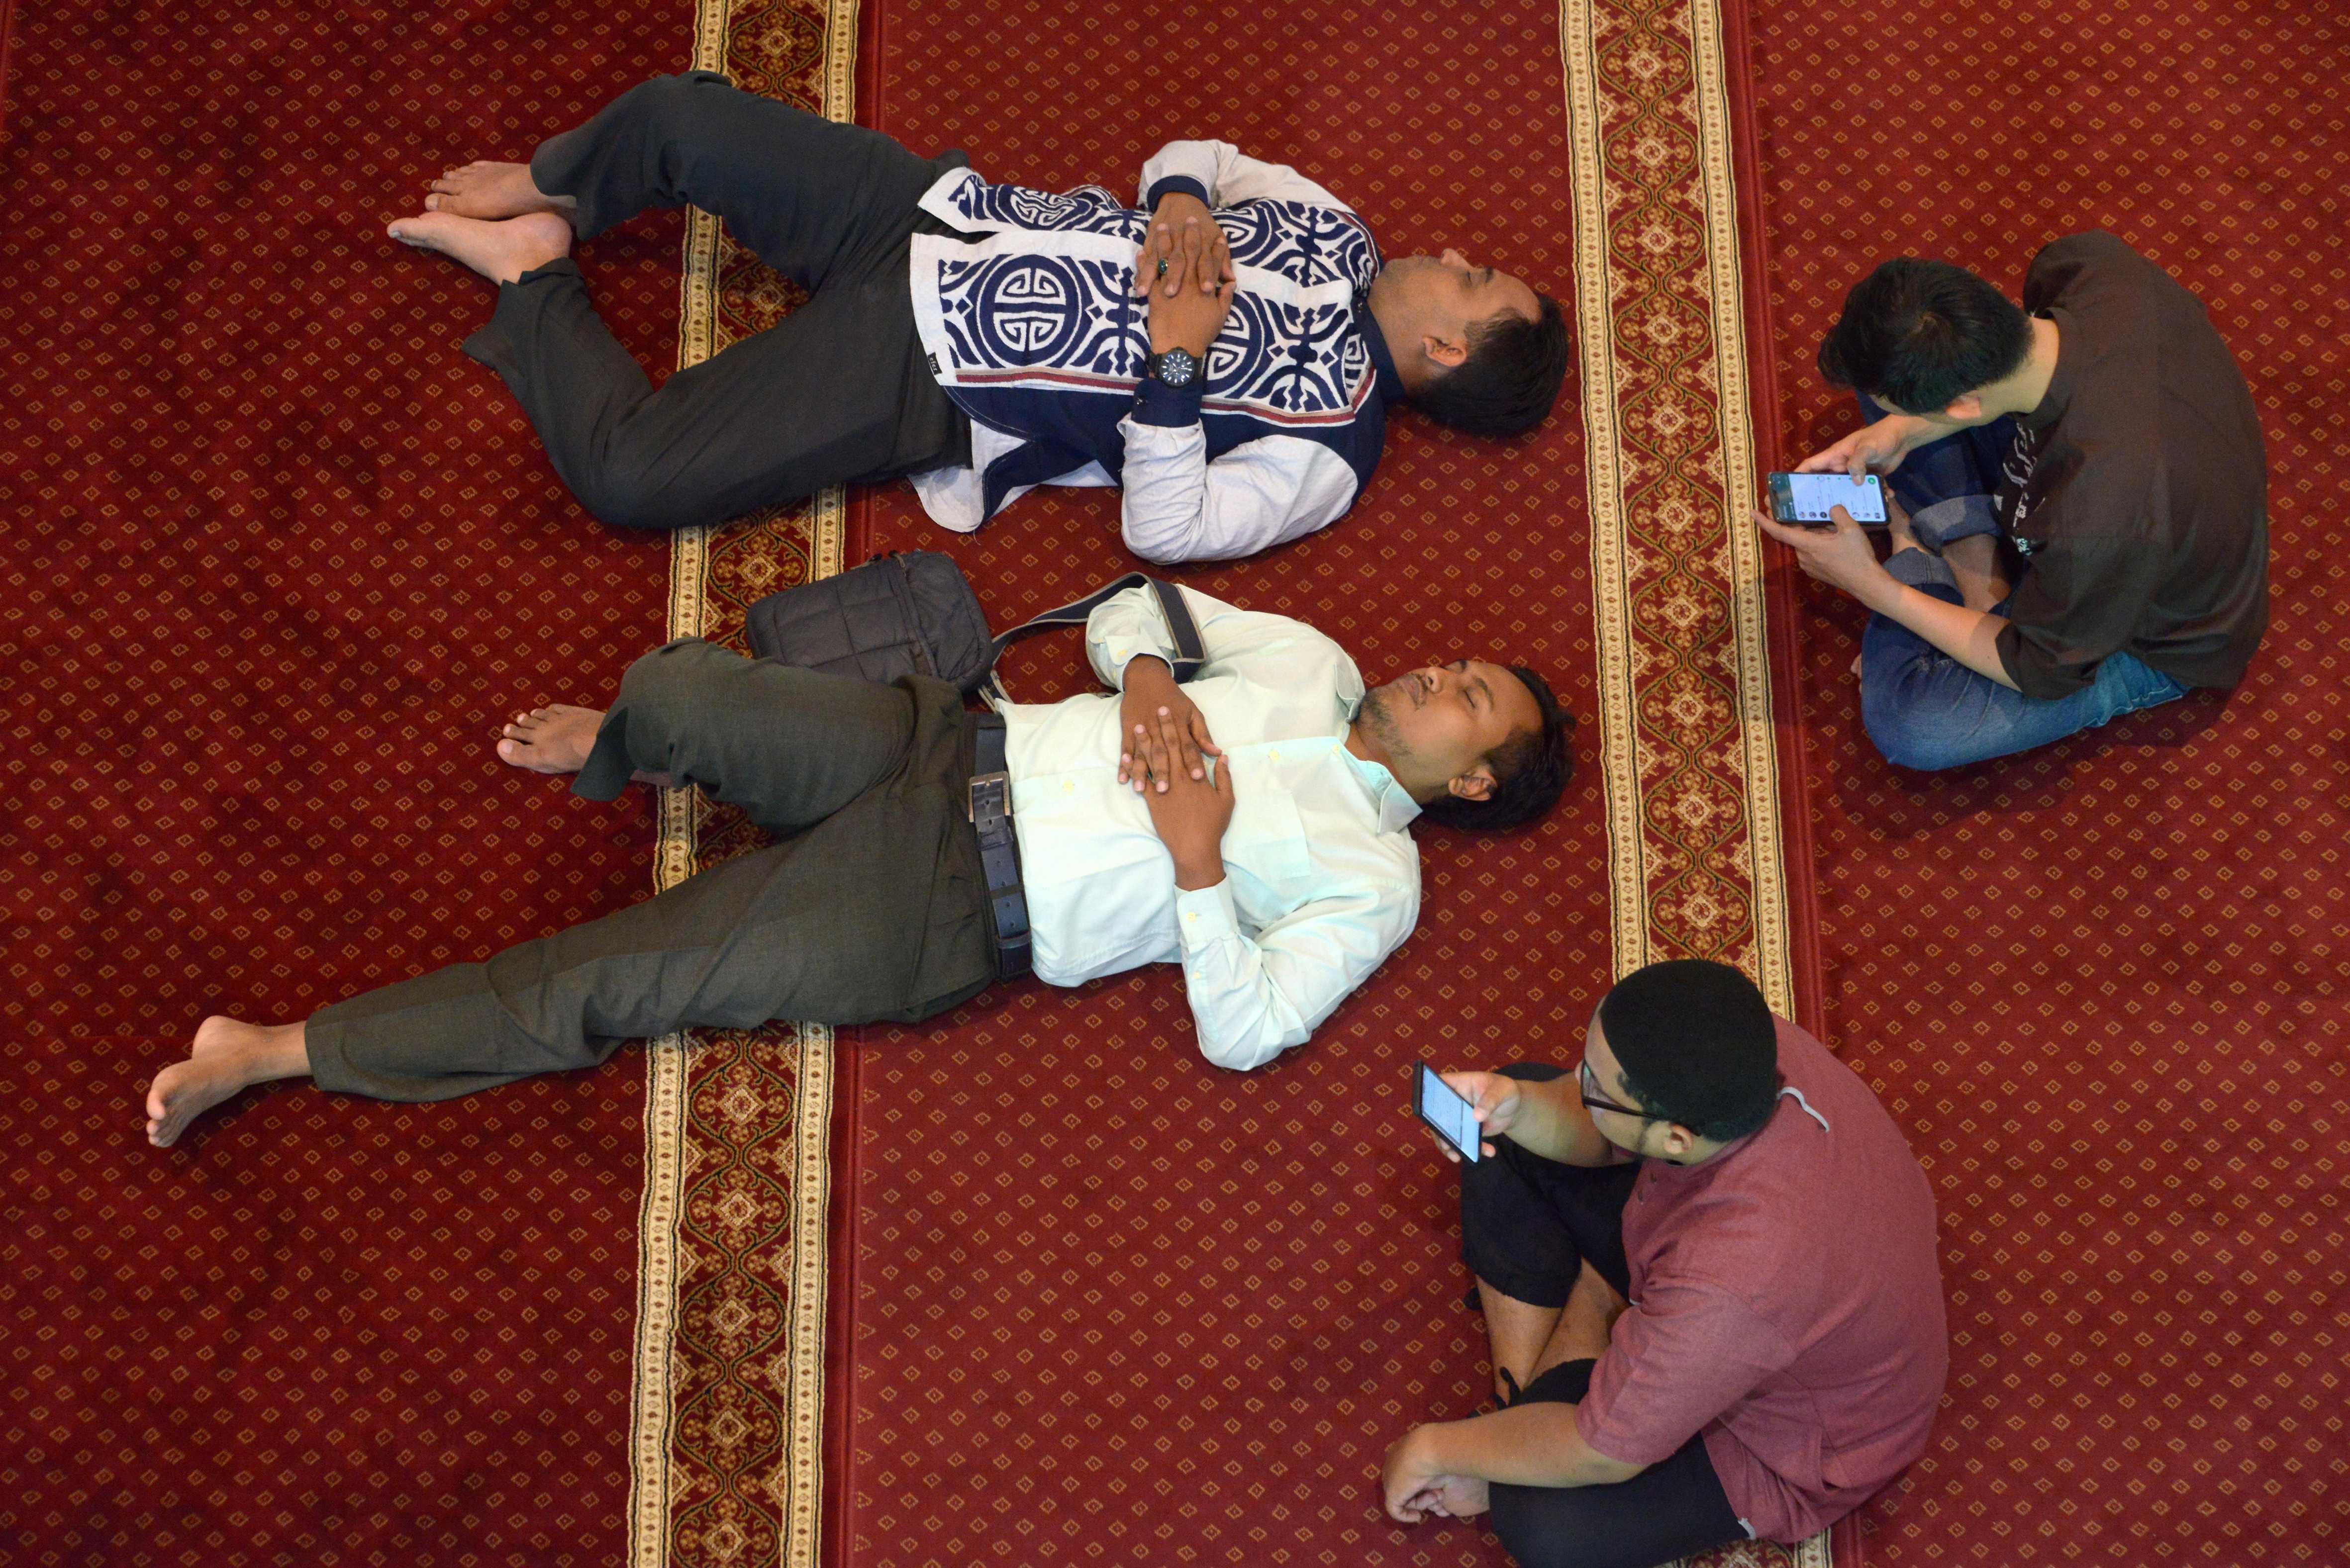 بعض الأشخاص يسترحون فى المسجد بعد قراءة القرآن